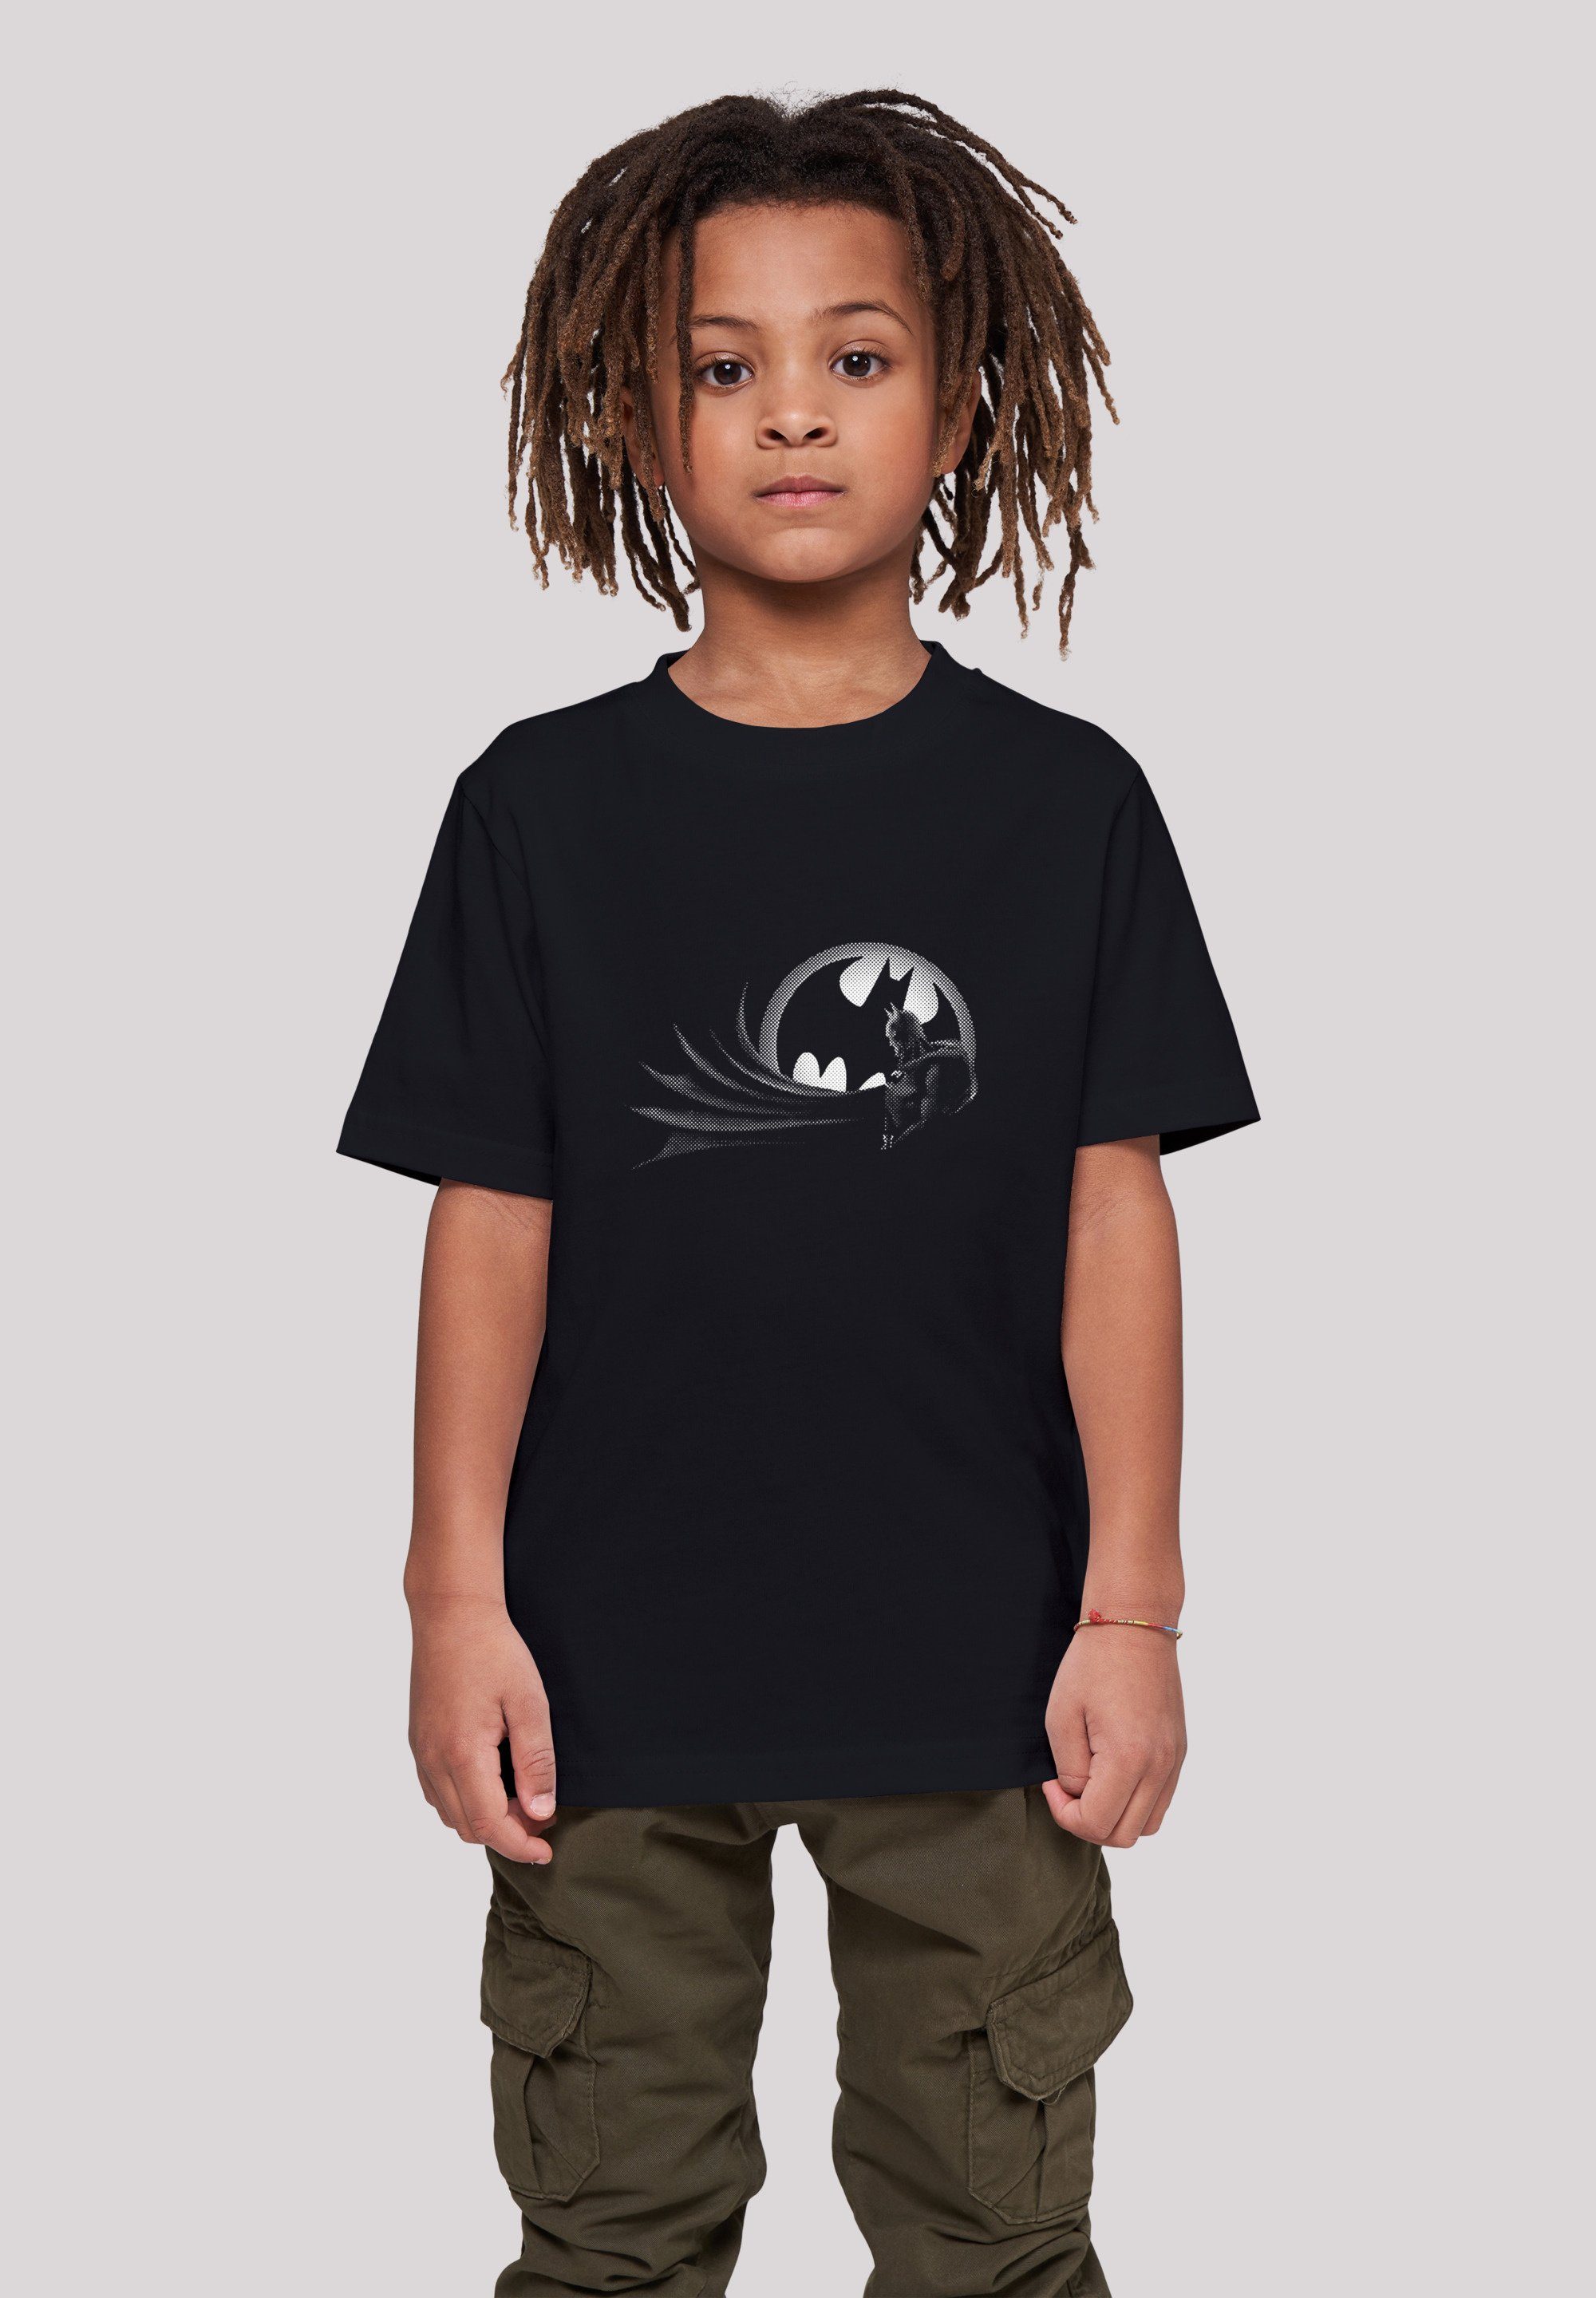 F4NT4STIC T-Shirt DC Comics Batman Spot Logo Unisex Kinder,Premium Merch,Jungen,Mädchen,Bedruckt